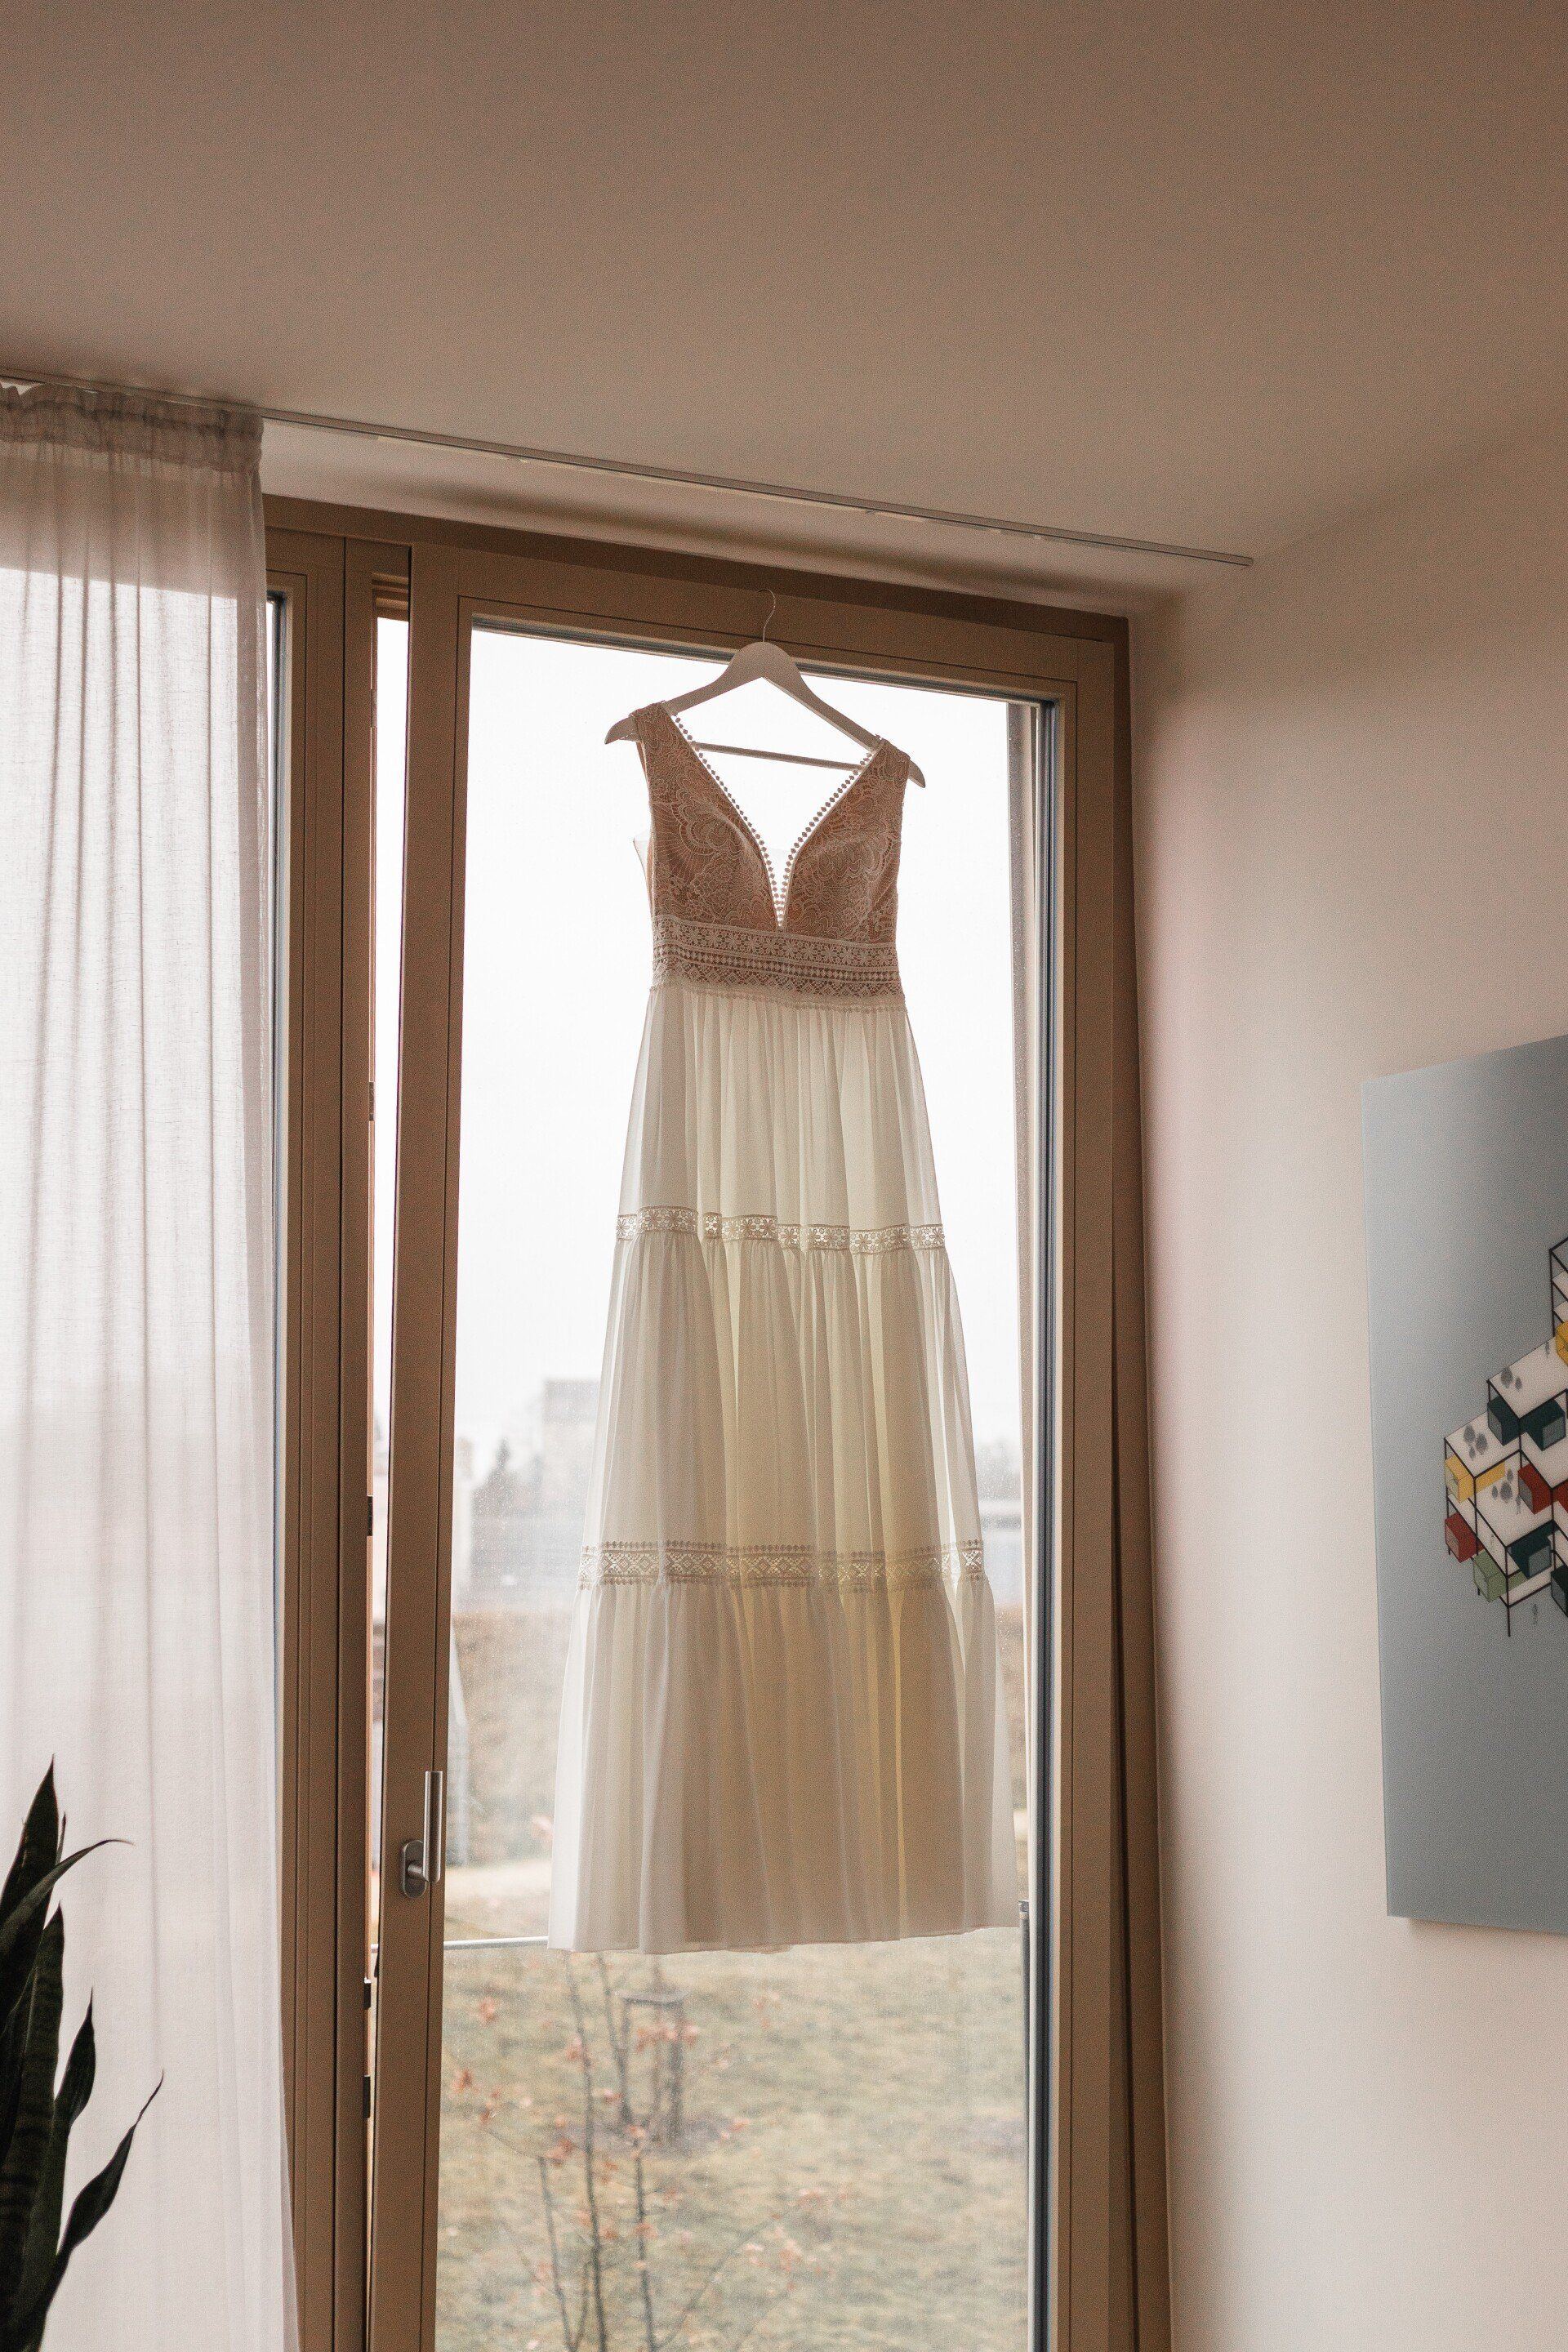 Dies ist eine Aufnahme des Brautkleids, das an einem Fenster hängt